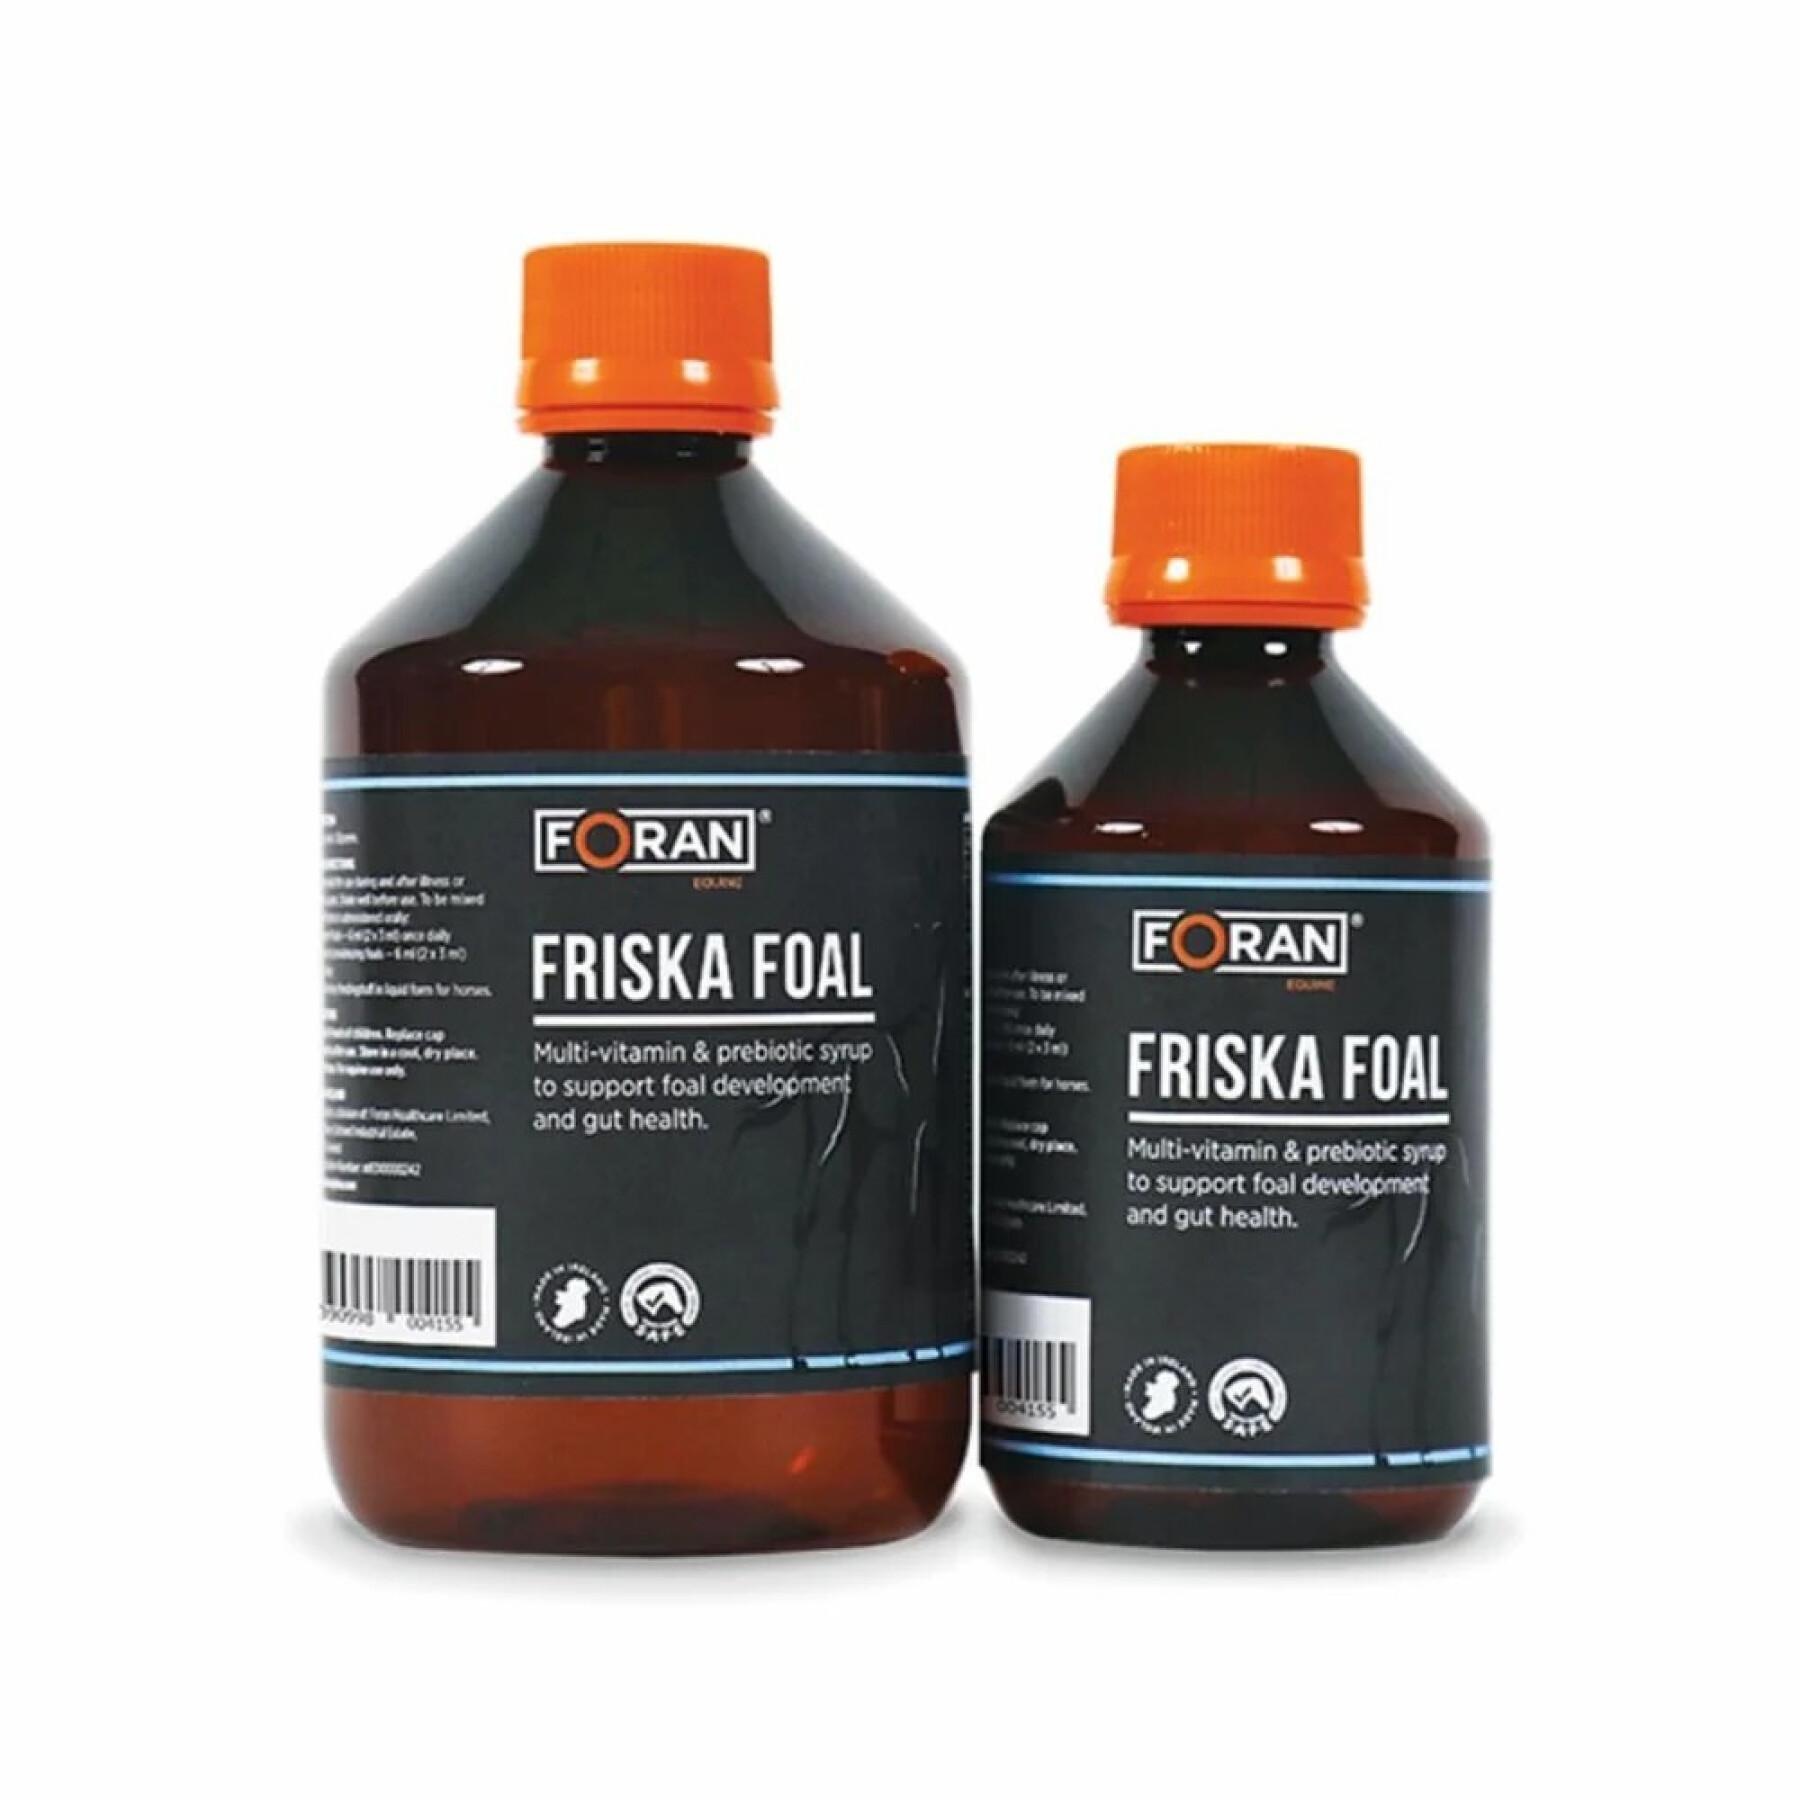 Vitamins and minerals for foals Foran Friska Foal